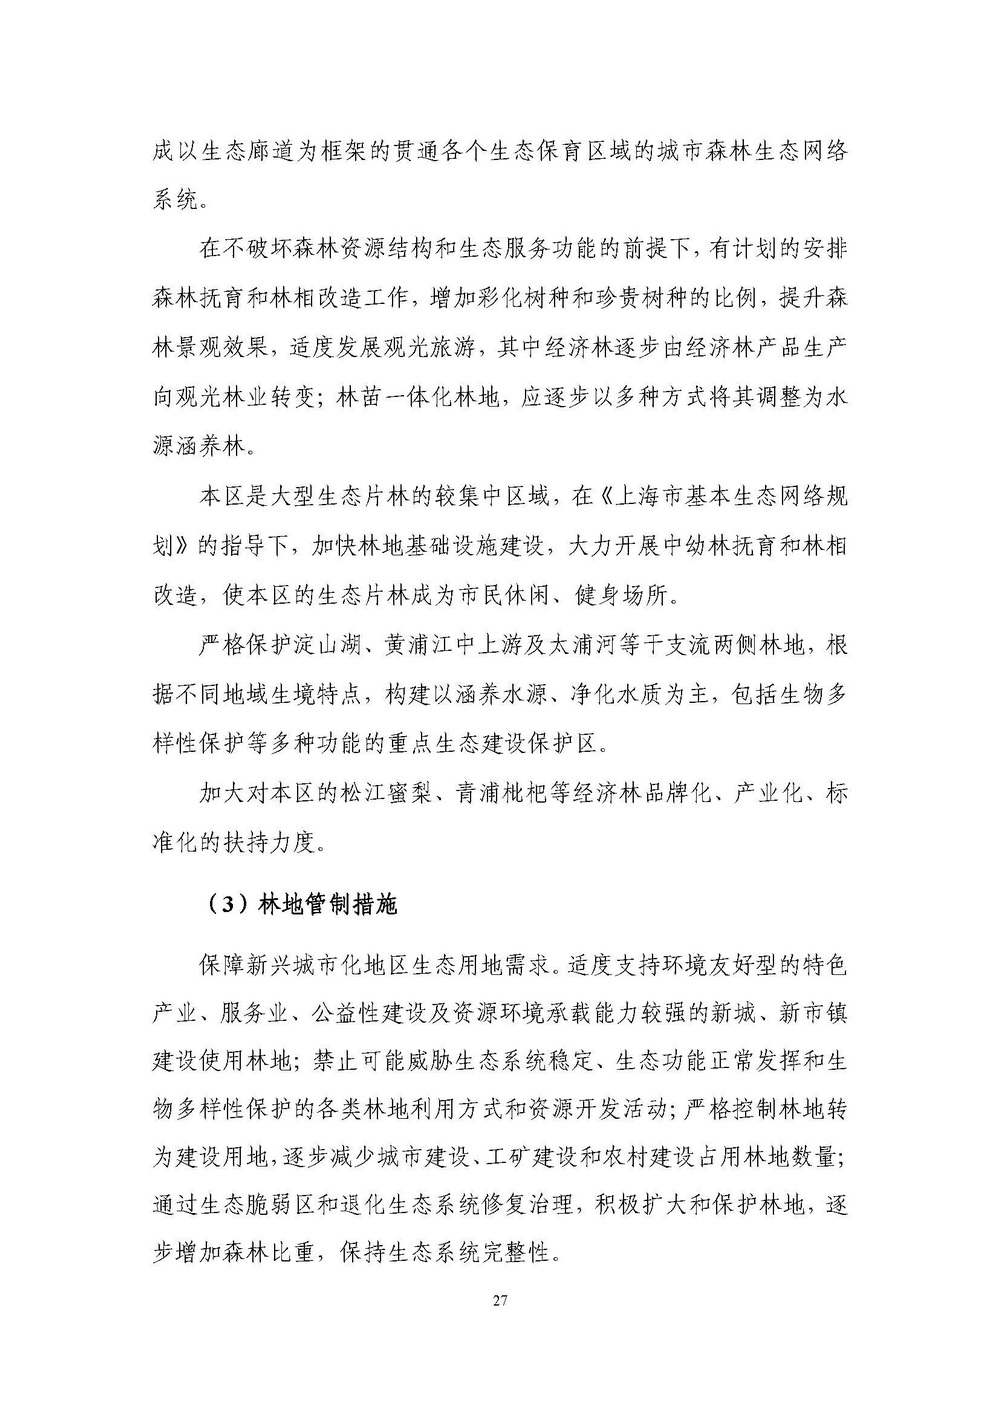 上海市森林和林地保护利用规划文本 公开稿 附图_页面_30.jpg